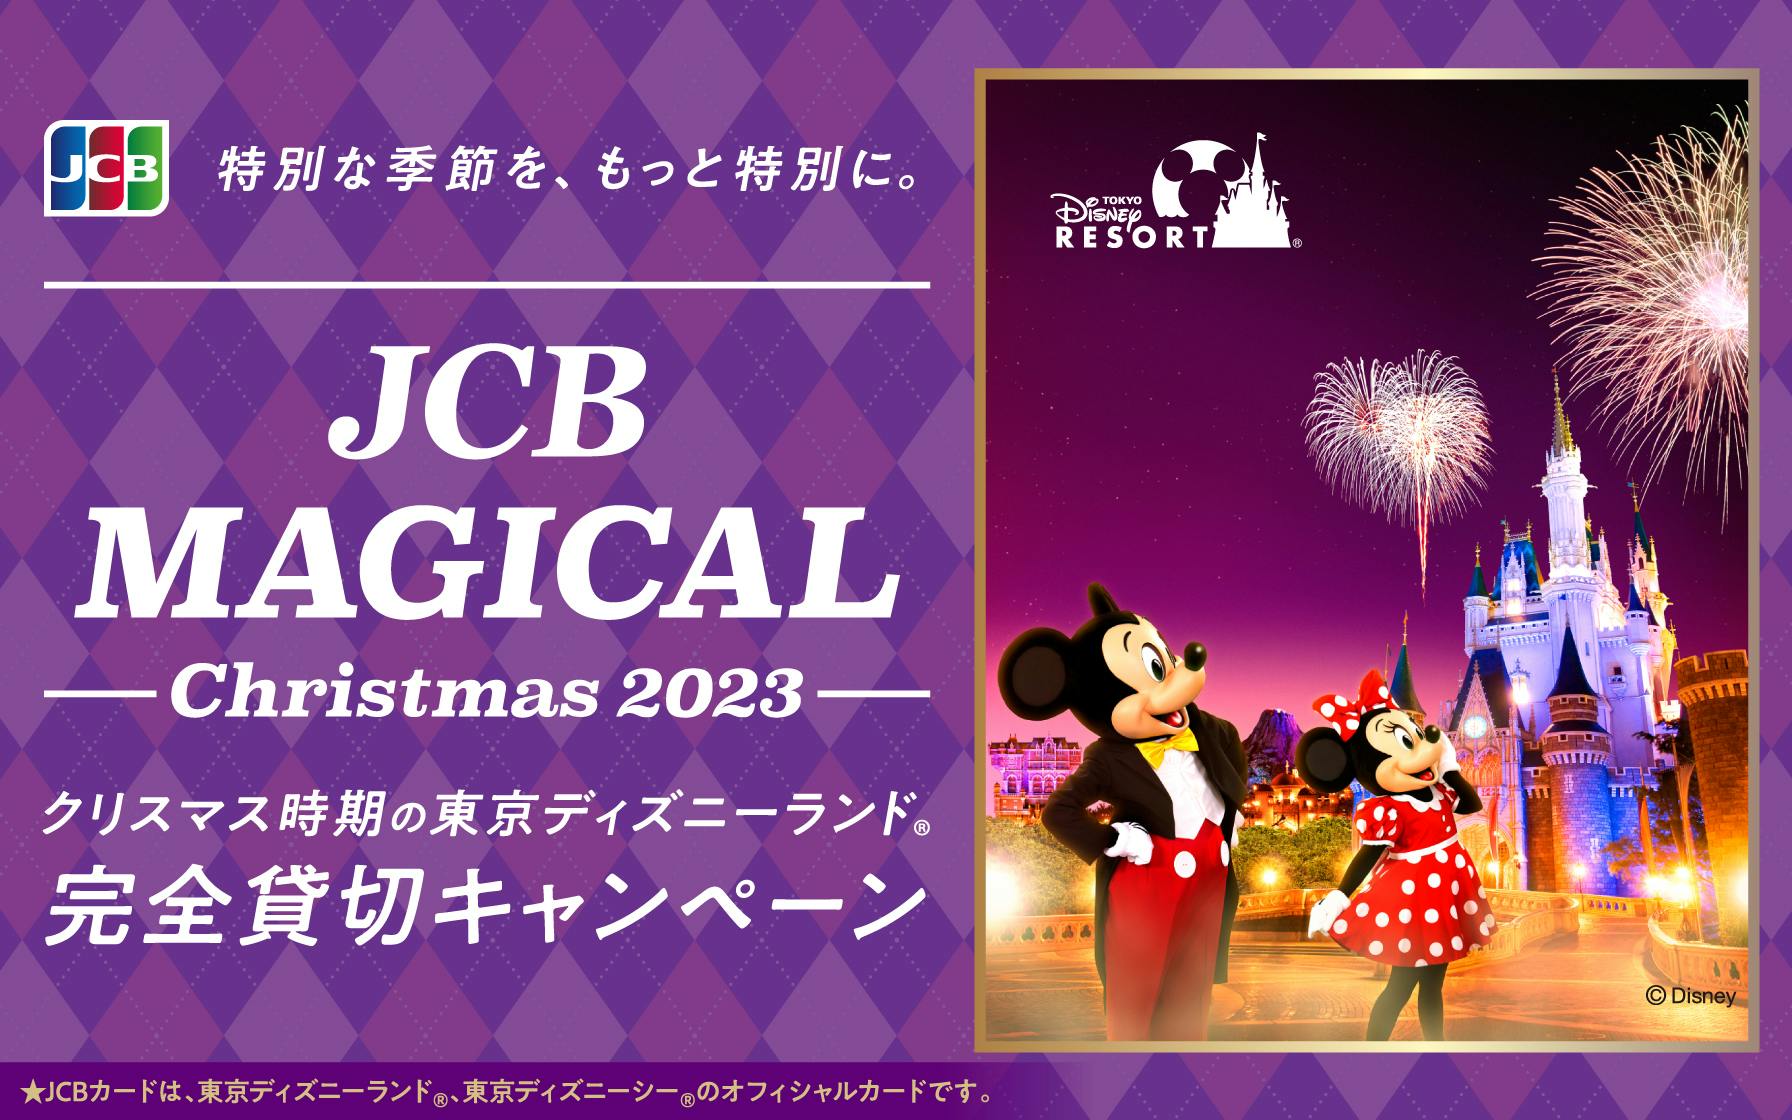 Jcb会員様限定 Jcb マジカル クリスマス 23 クリスマス時期の東京ディズニーランド R 完全貸切キャンペーン クレジットカードはセゾン カード